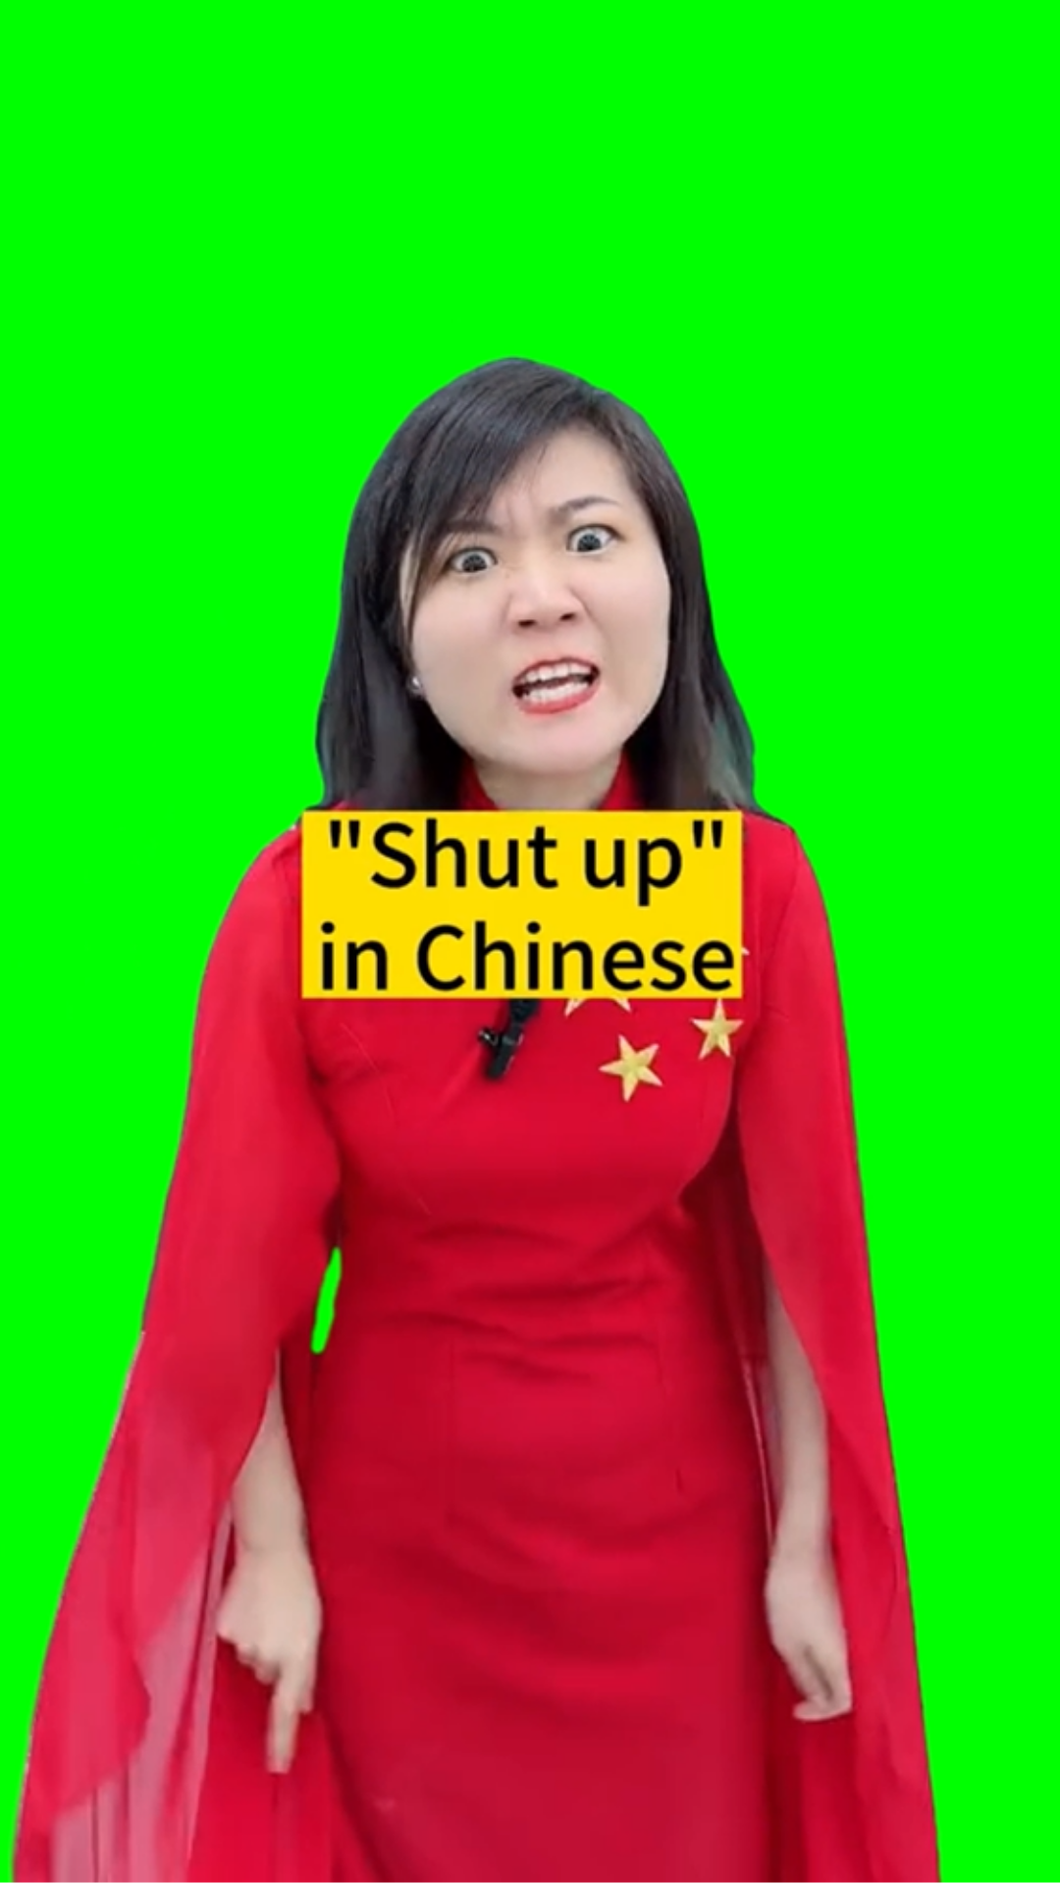 SHUT UP in Chinese - TikTok Meme (Green Screen)